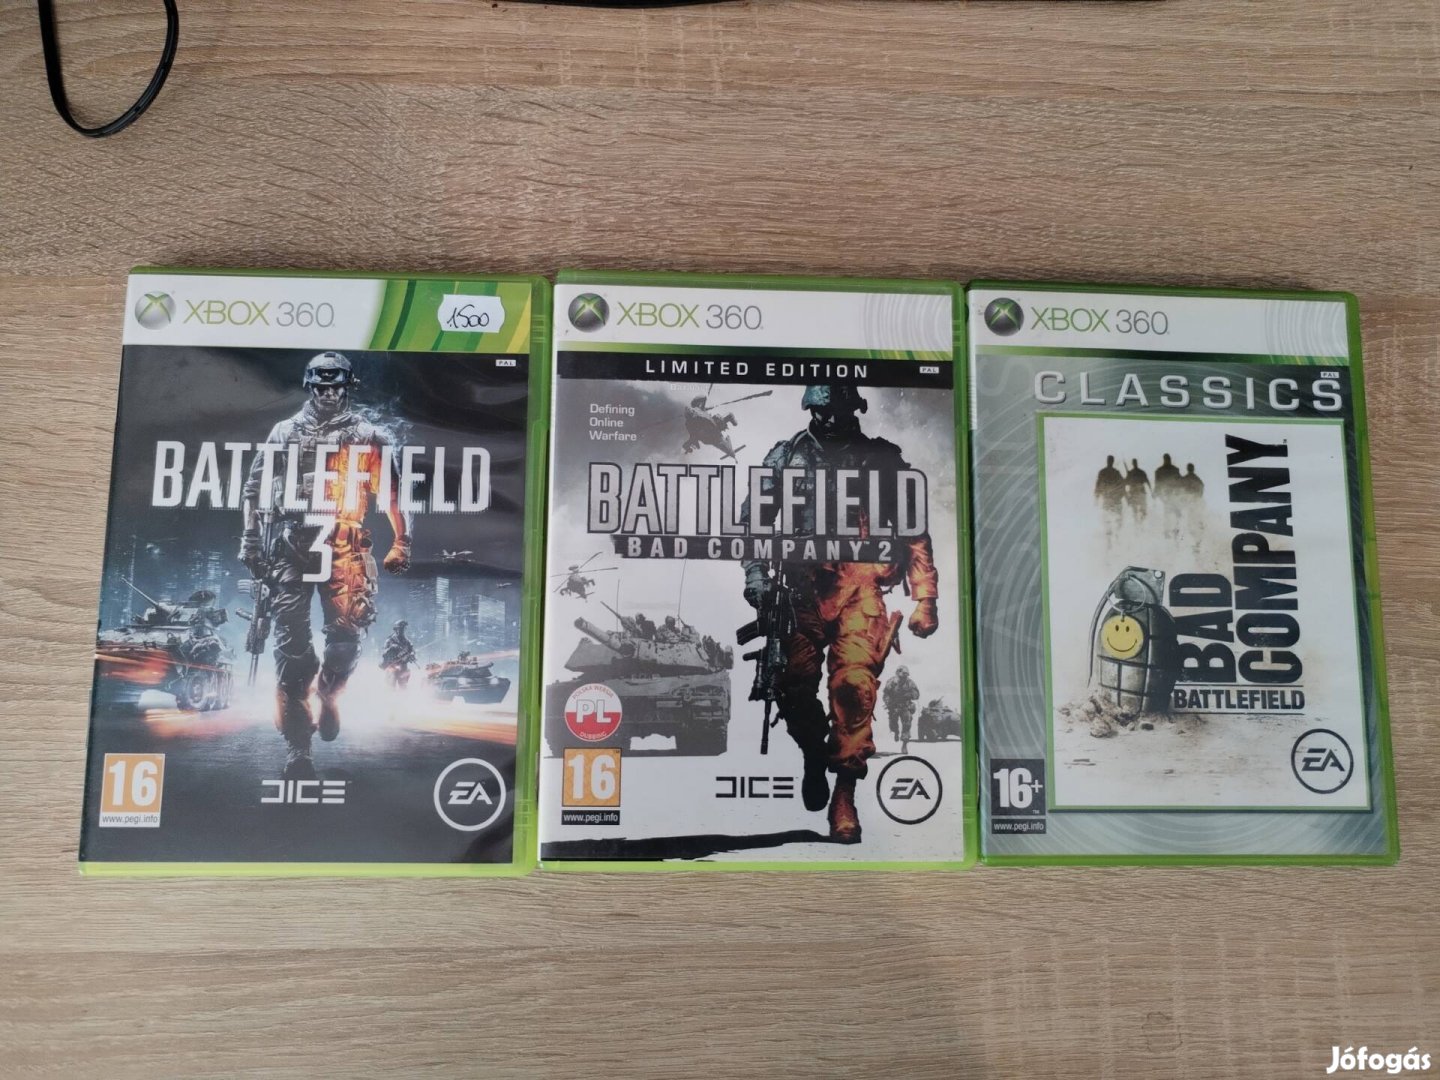 3 db Battlefield Xbox 360 játék 